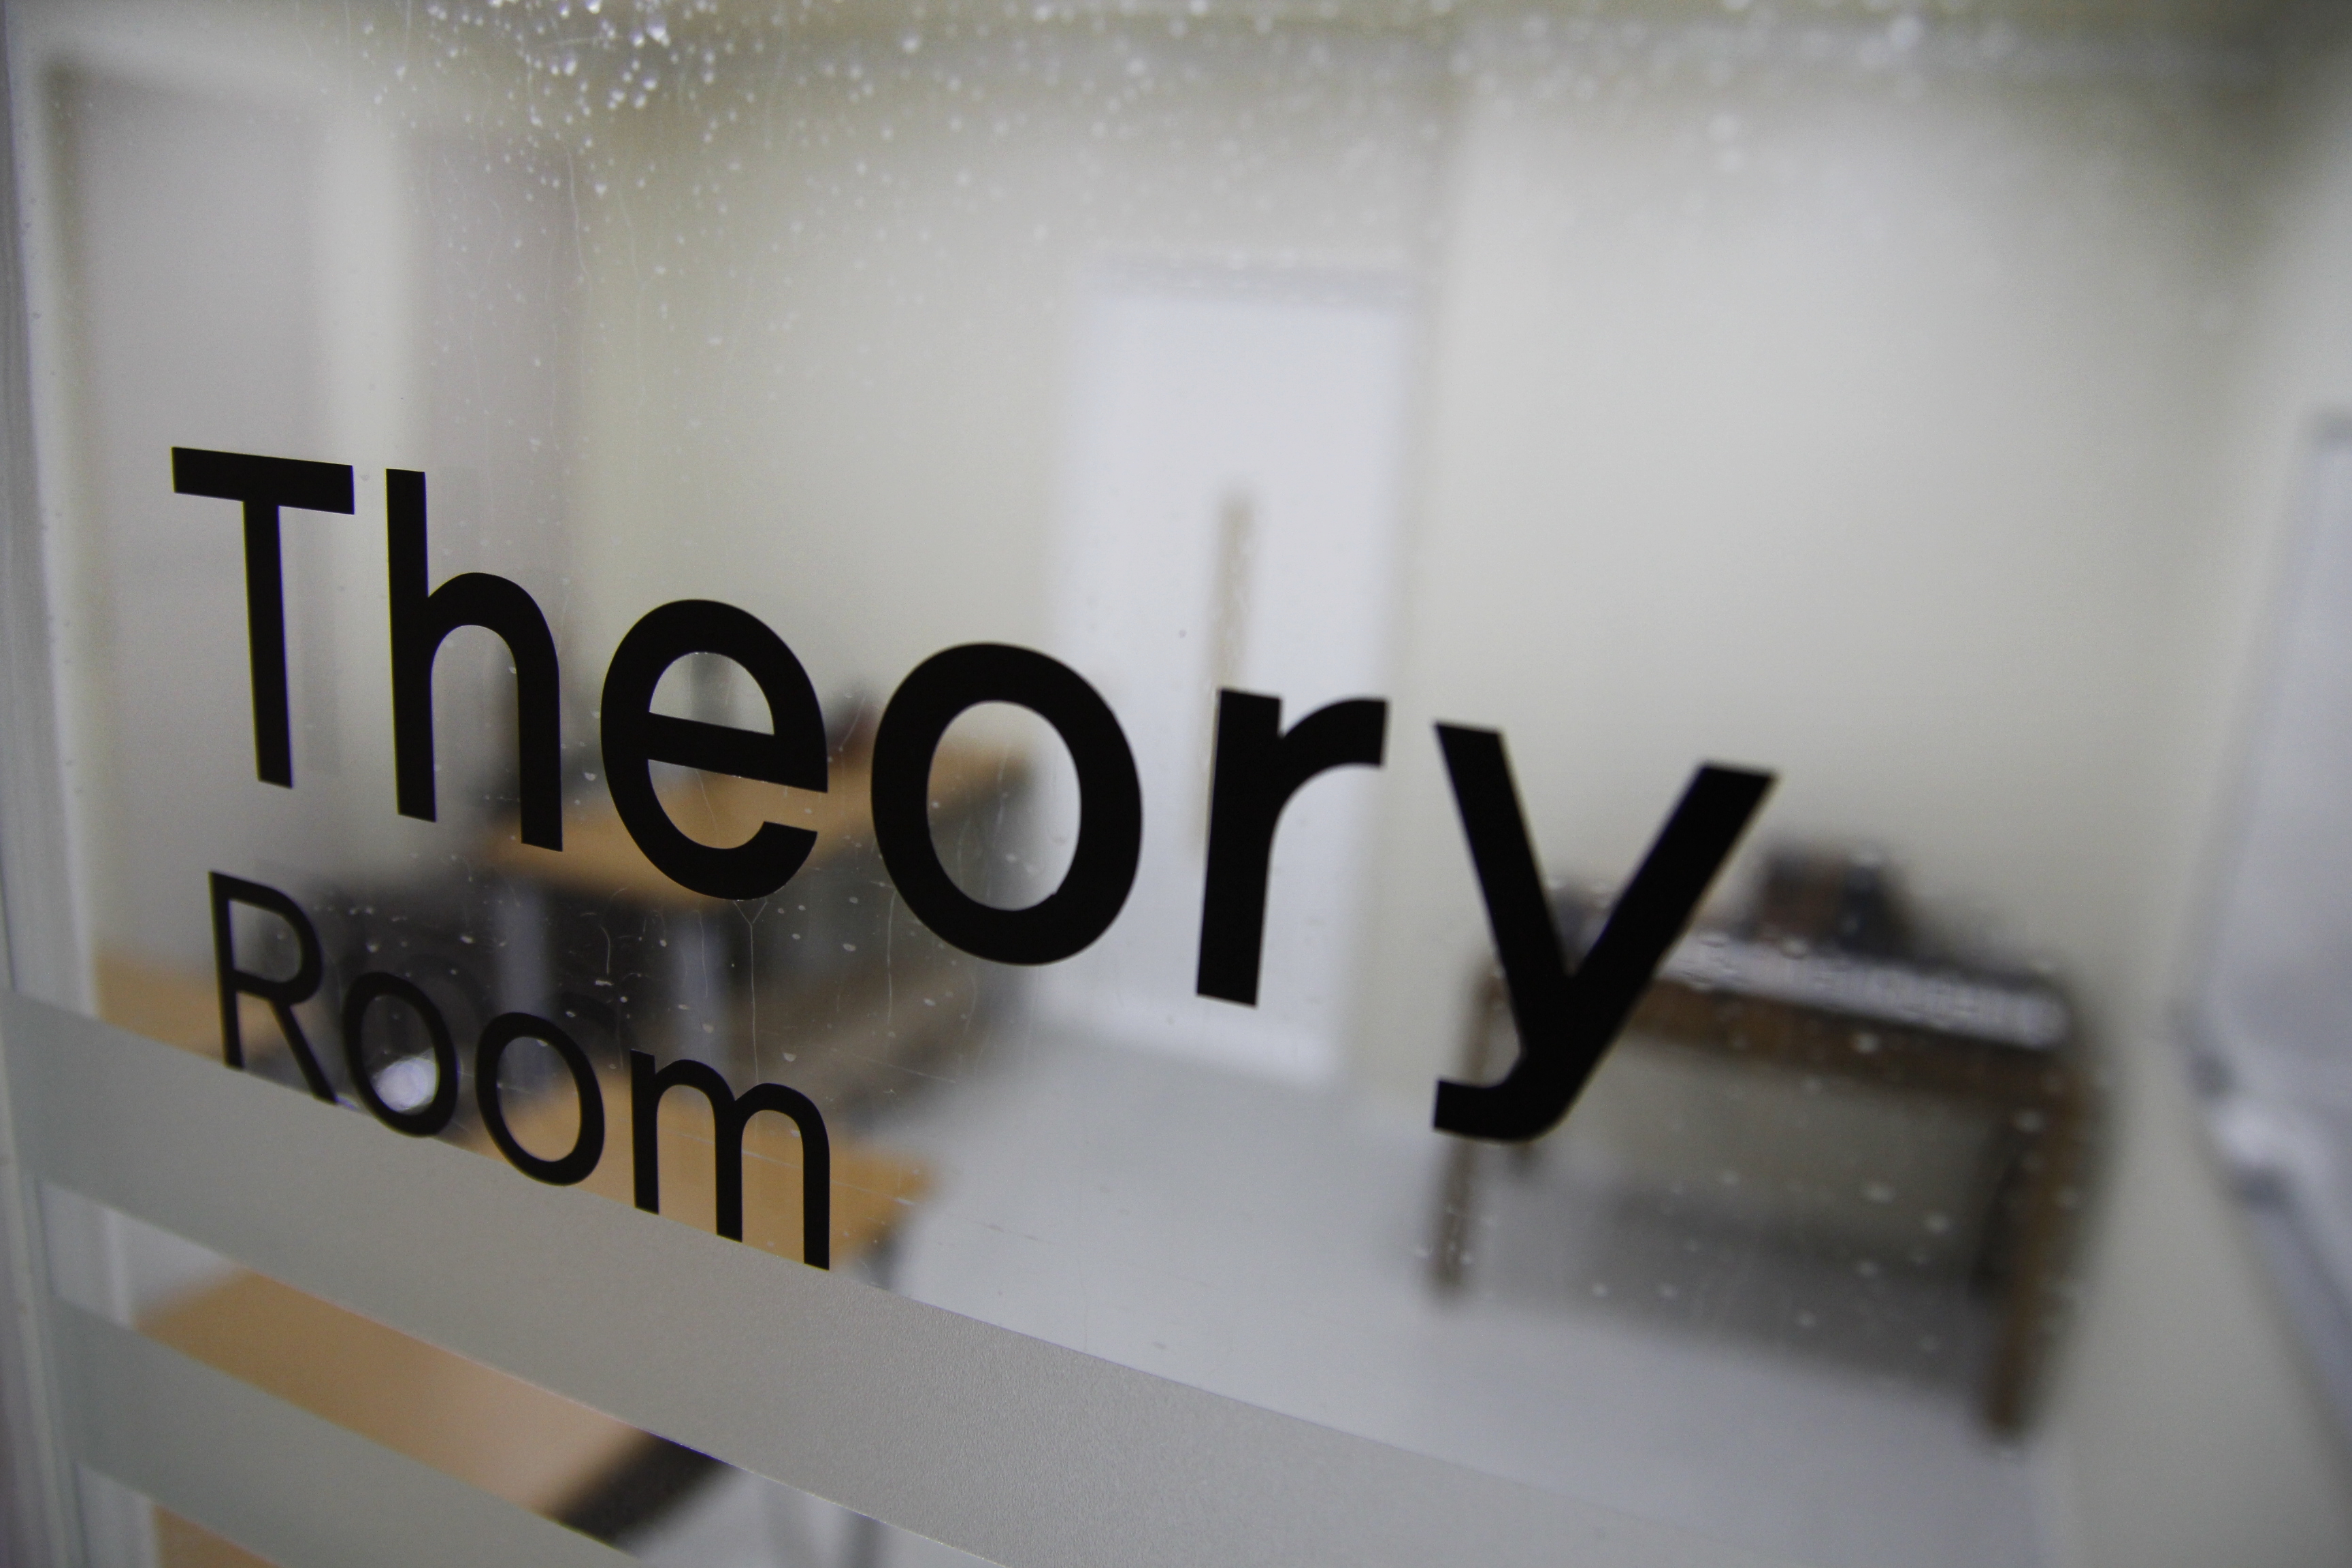 theory room